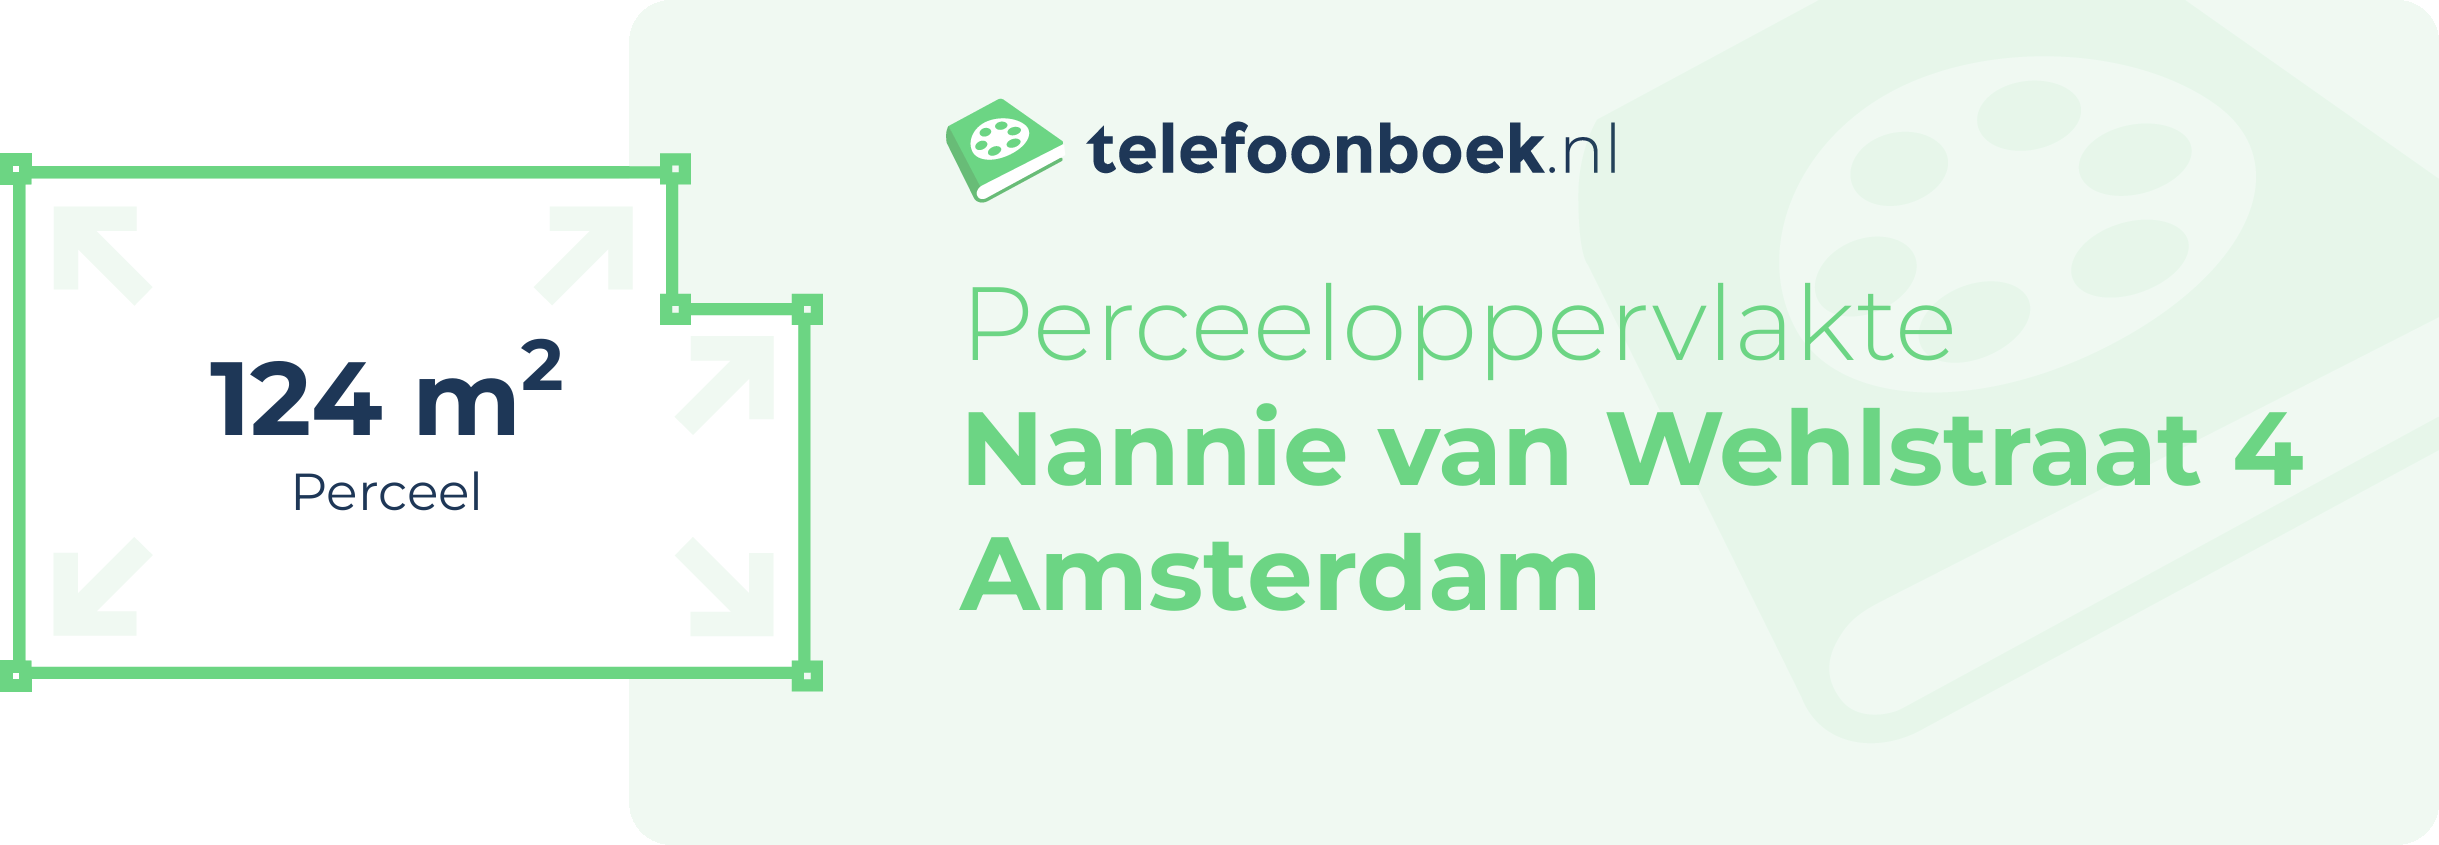 Perceeloppervlakte Nannie Van Wehlstraat 4 Amsterdam